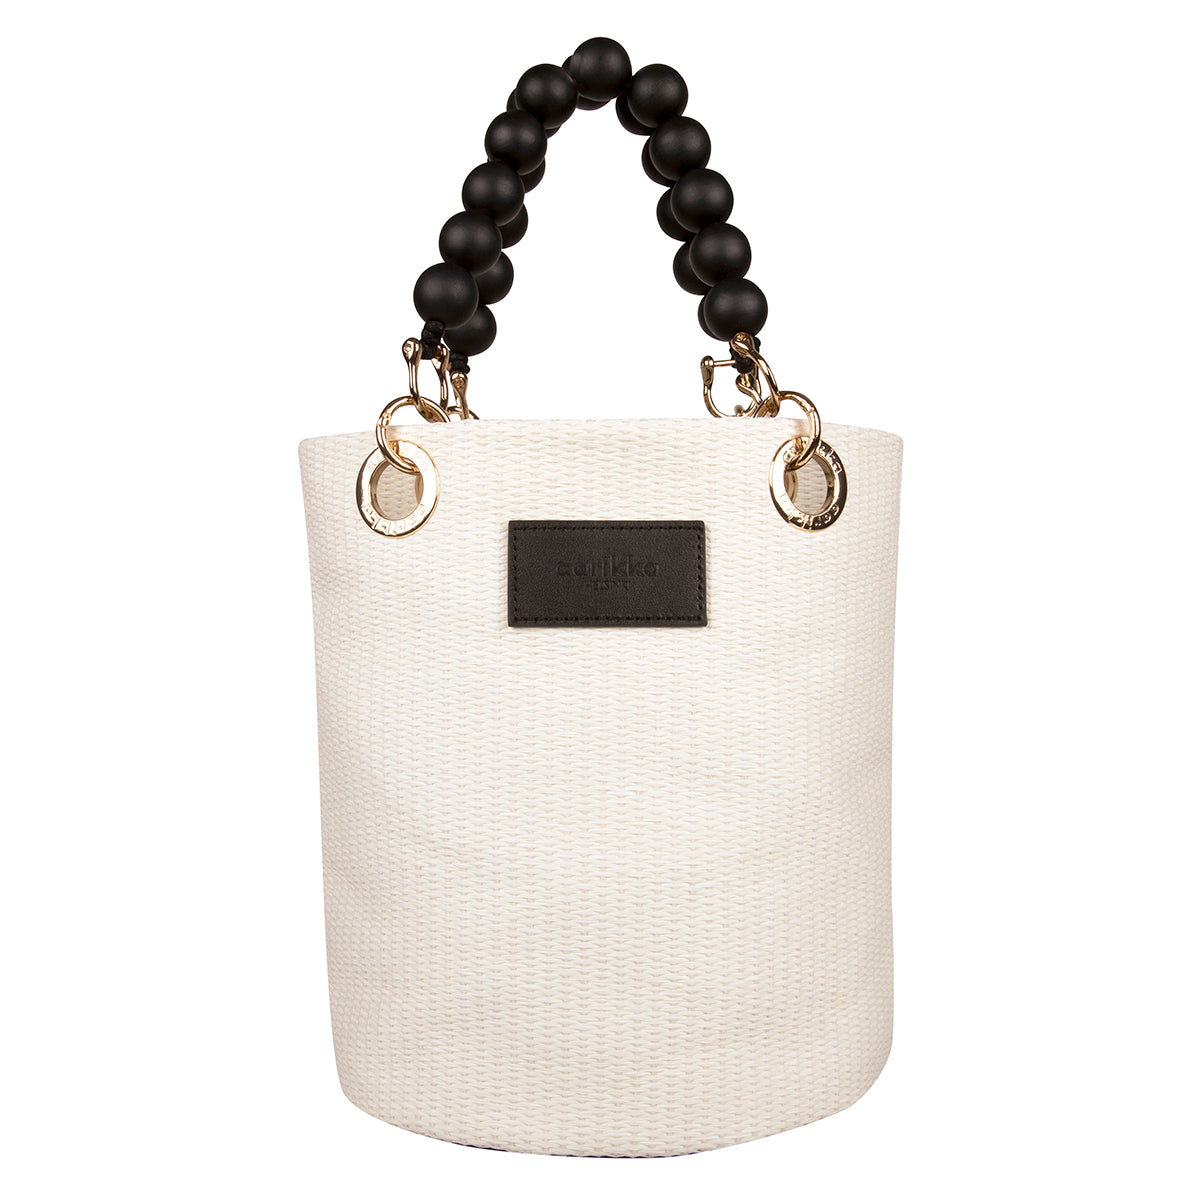 Laura basket bag, black